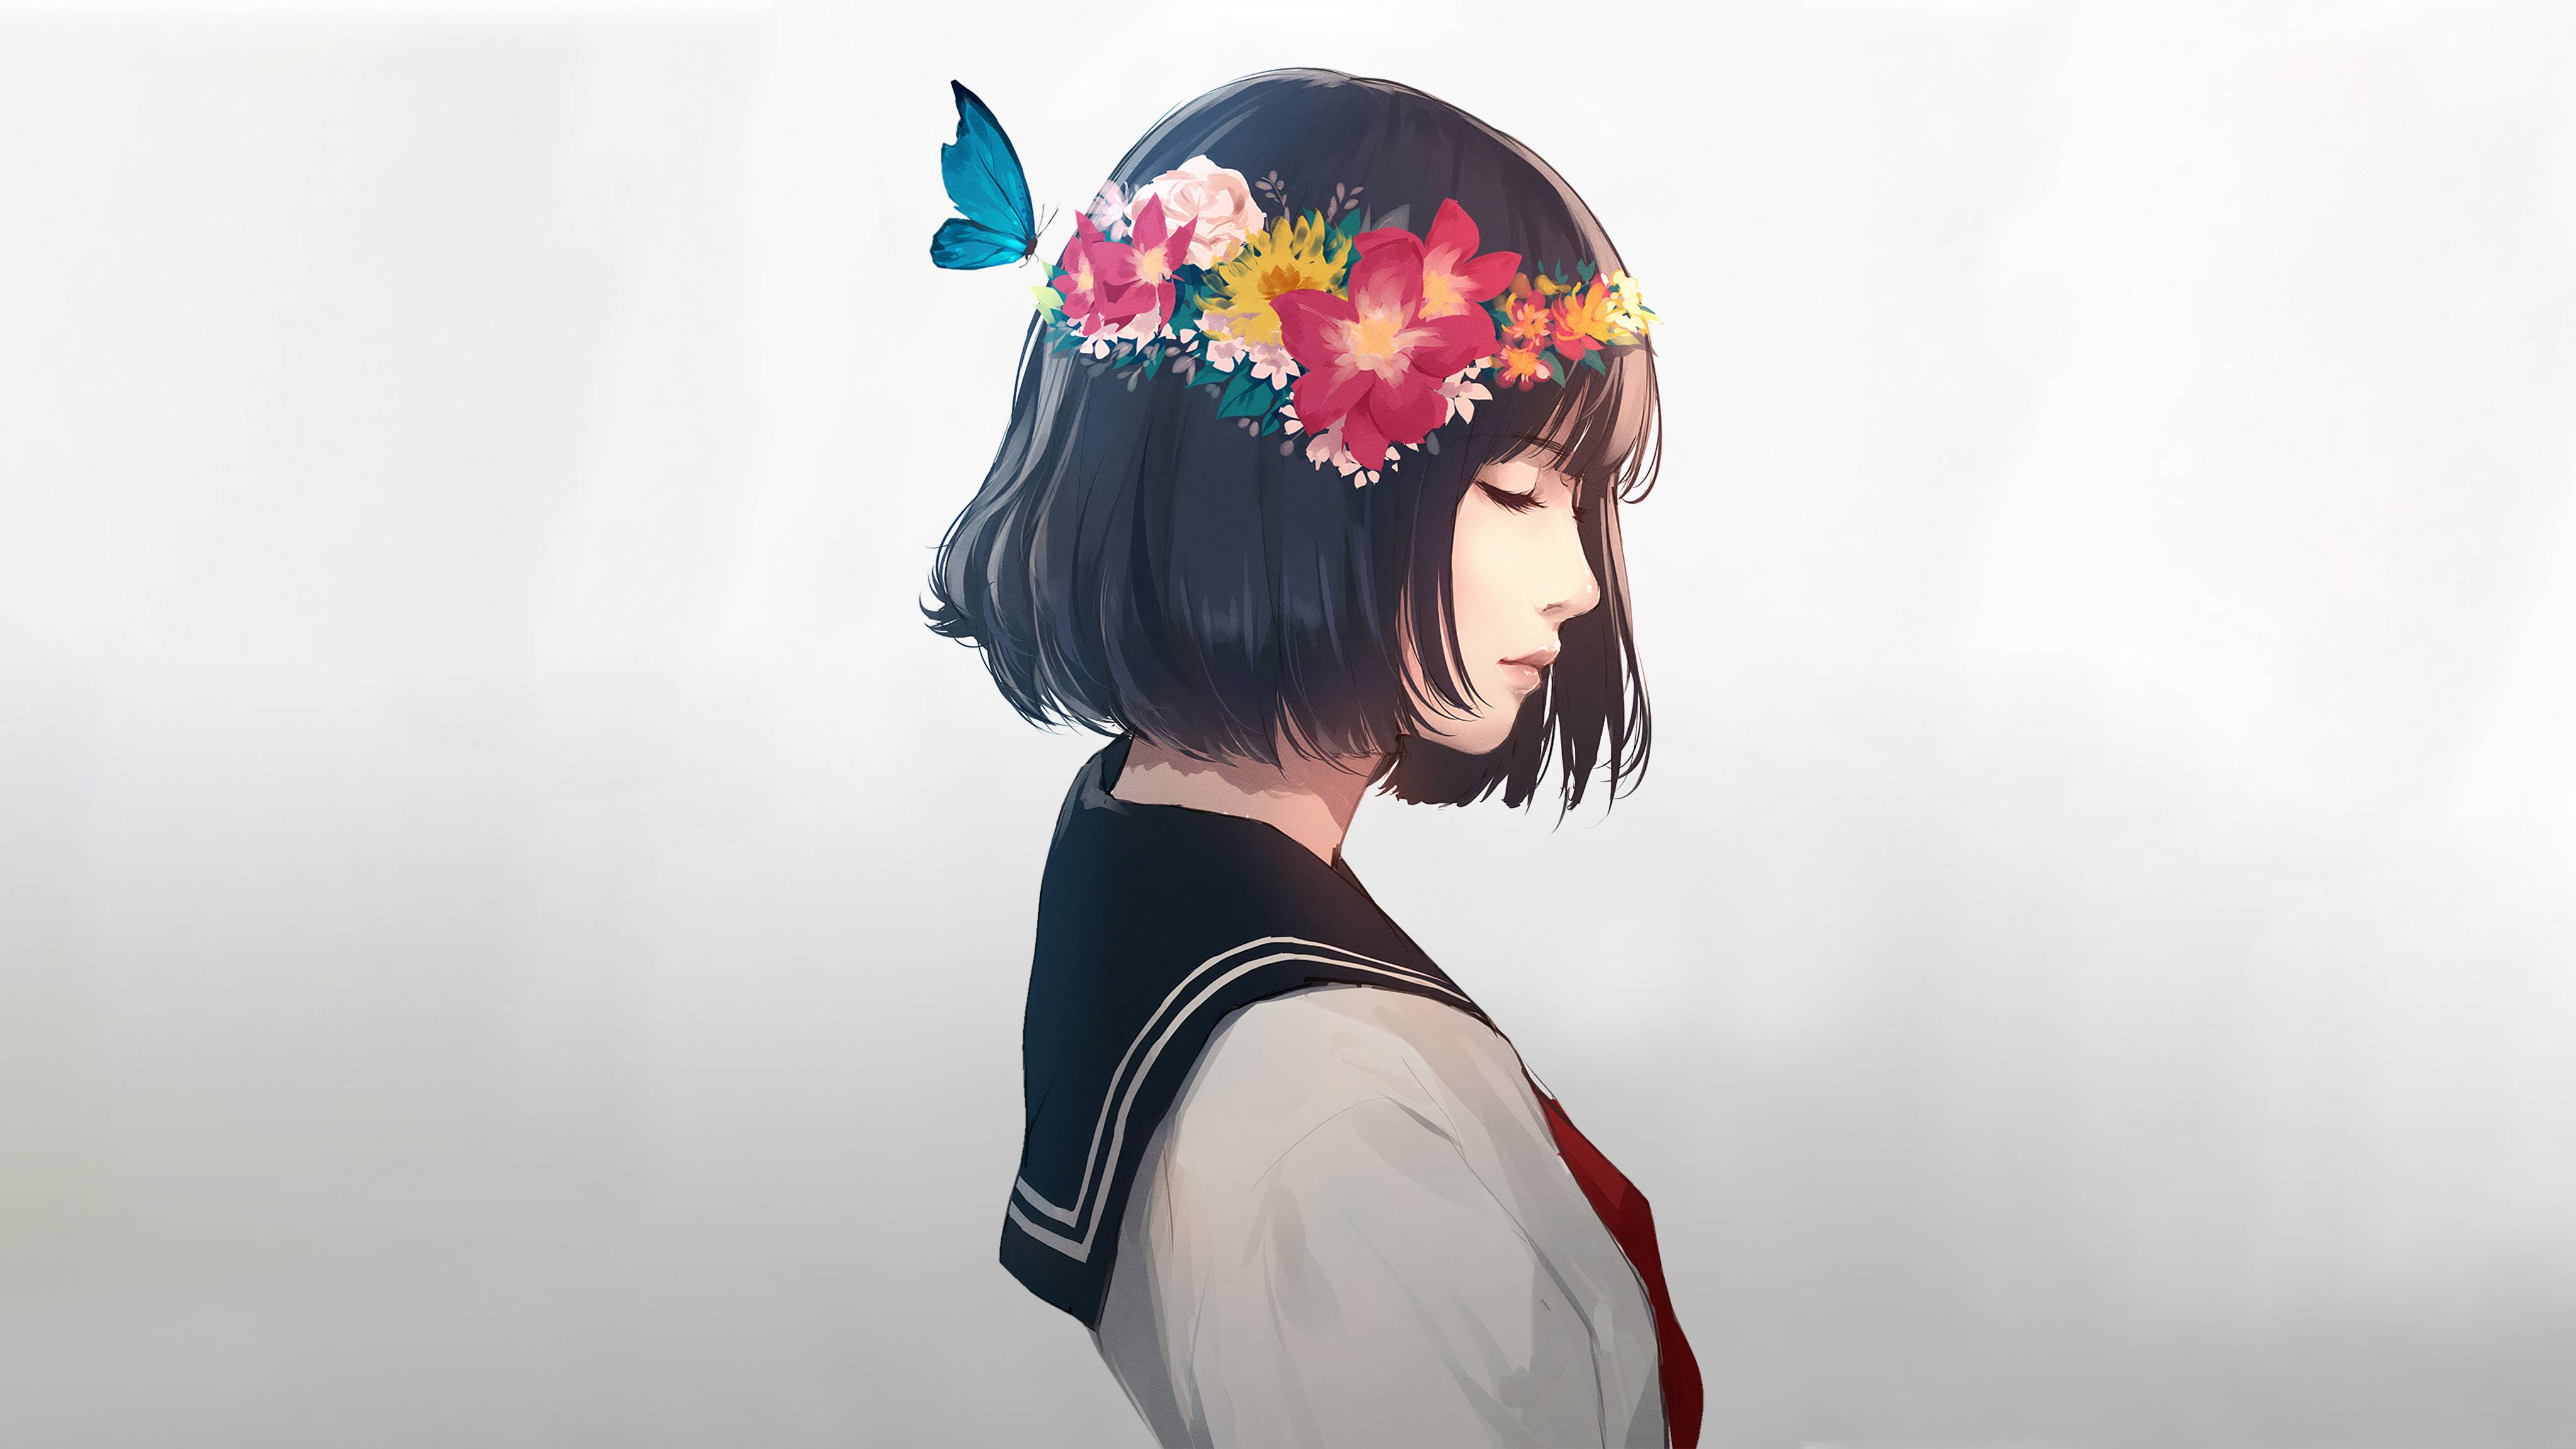 Digital Art Black Hair Short Hair Sailor Uniform Flowers Flower In Hair Butterfly White Background C 4096x2304